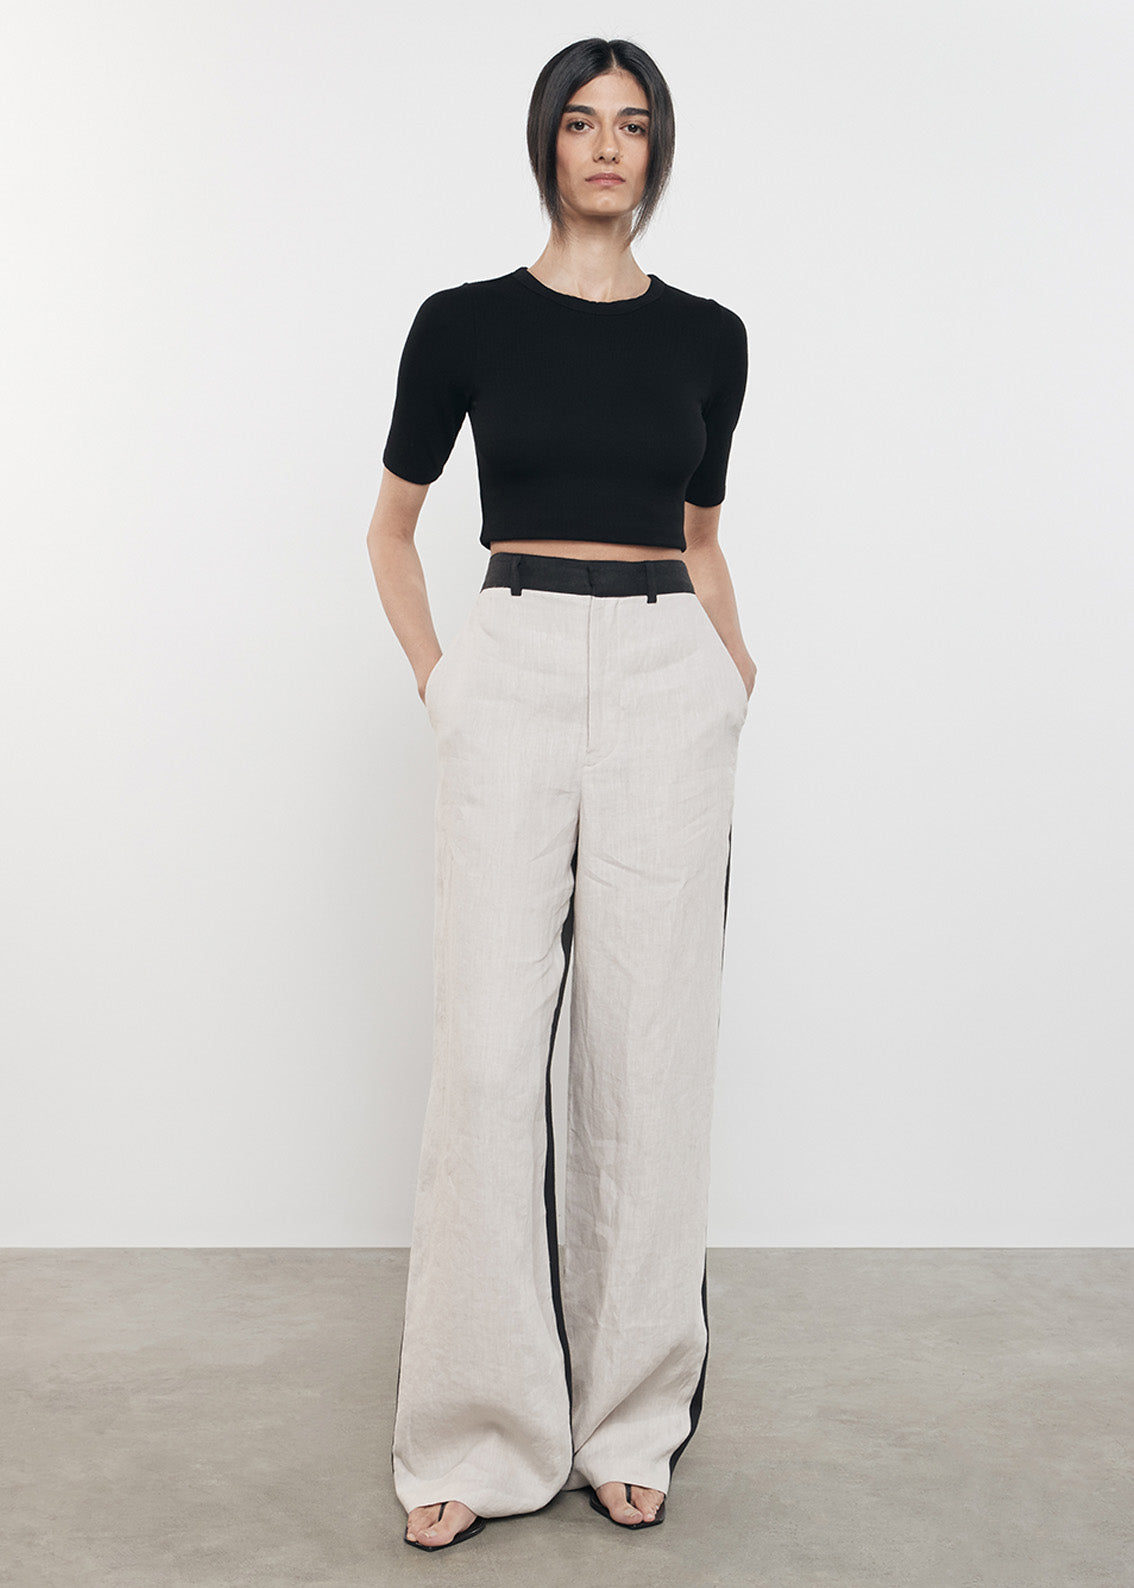 Linen Colorblock Trouser | Flax/Black